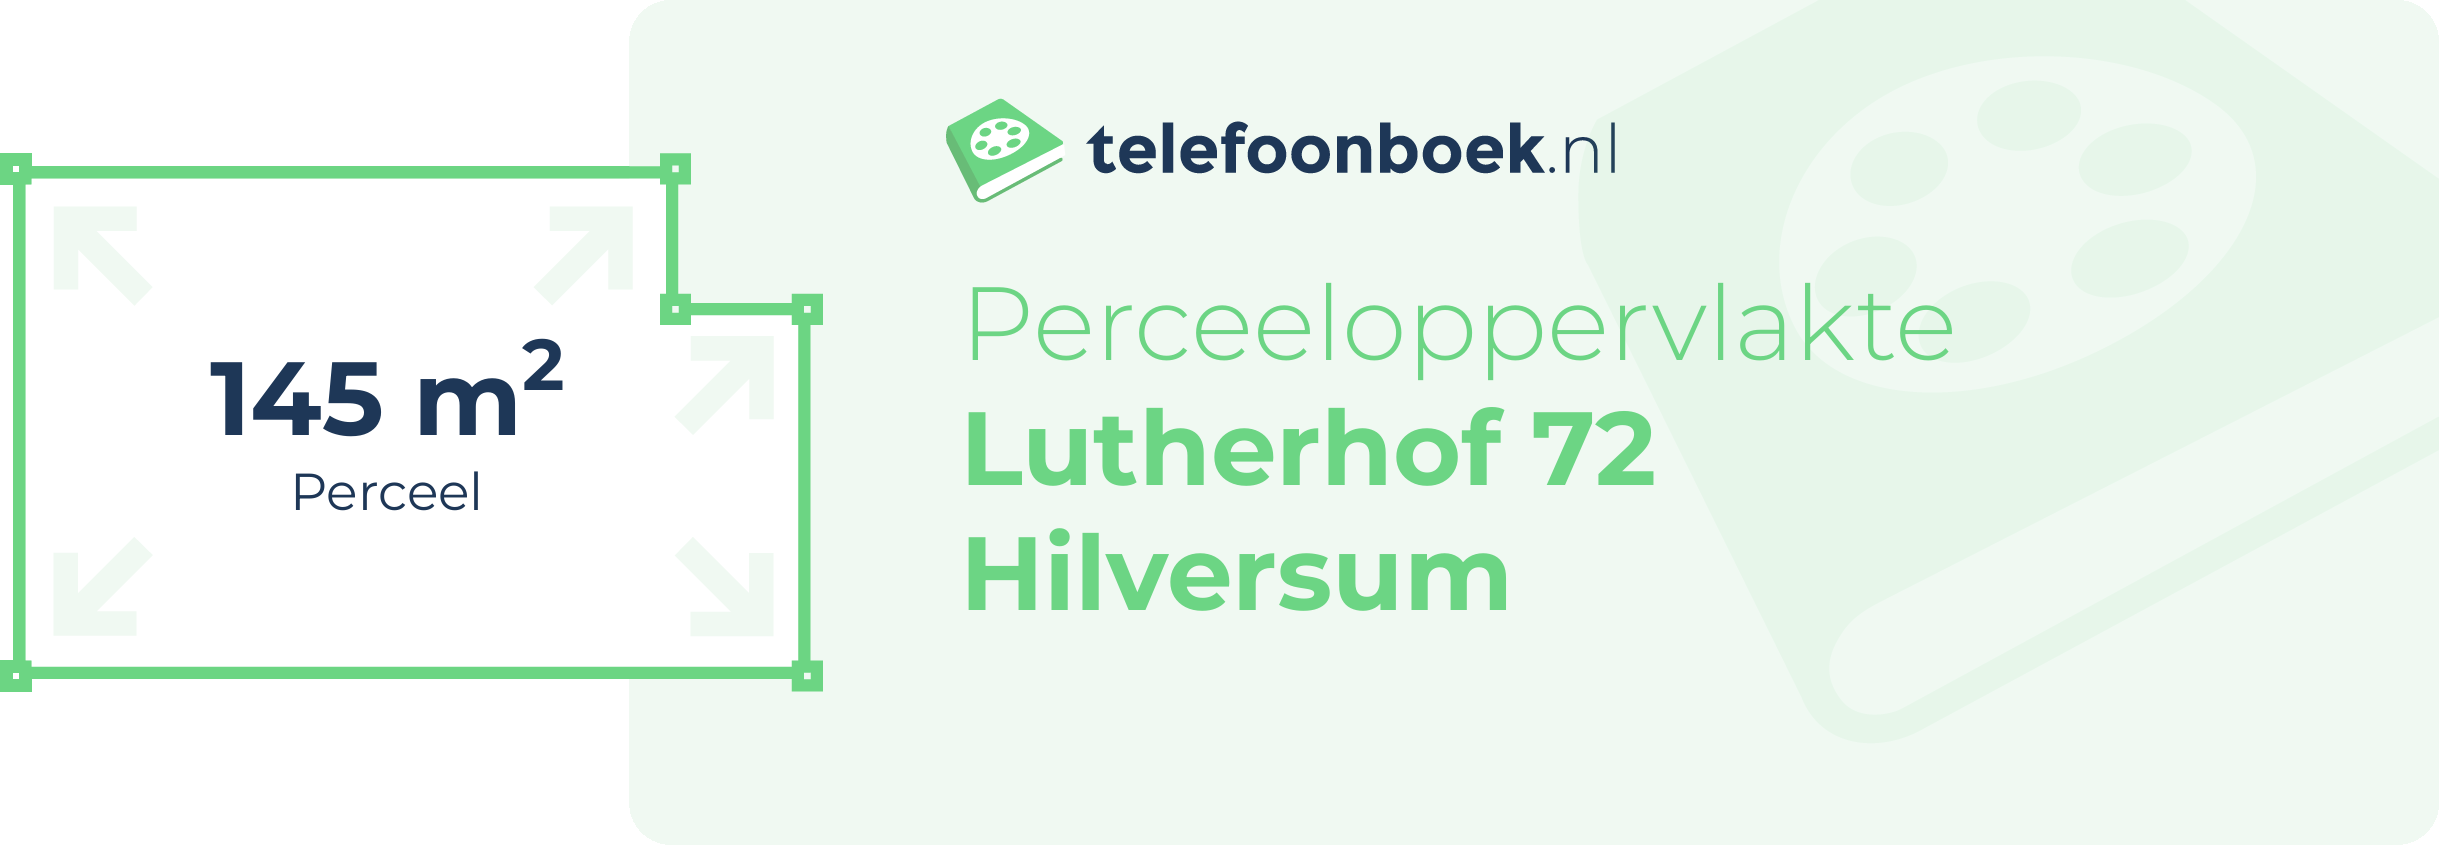 Perceeloppervlakte Lutherhof 72 Hilversum